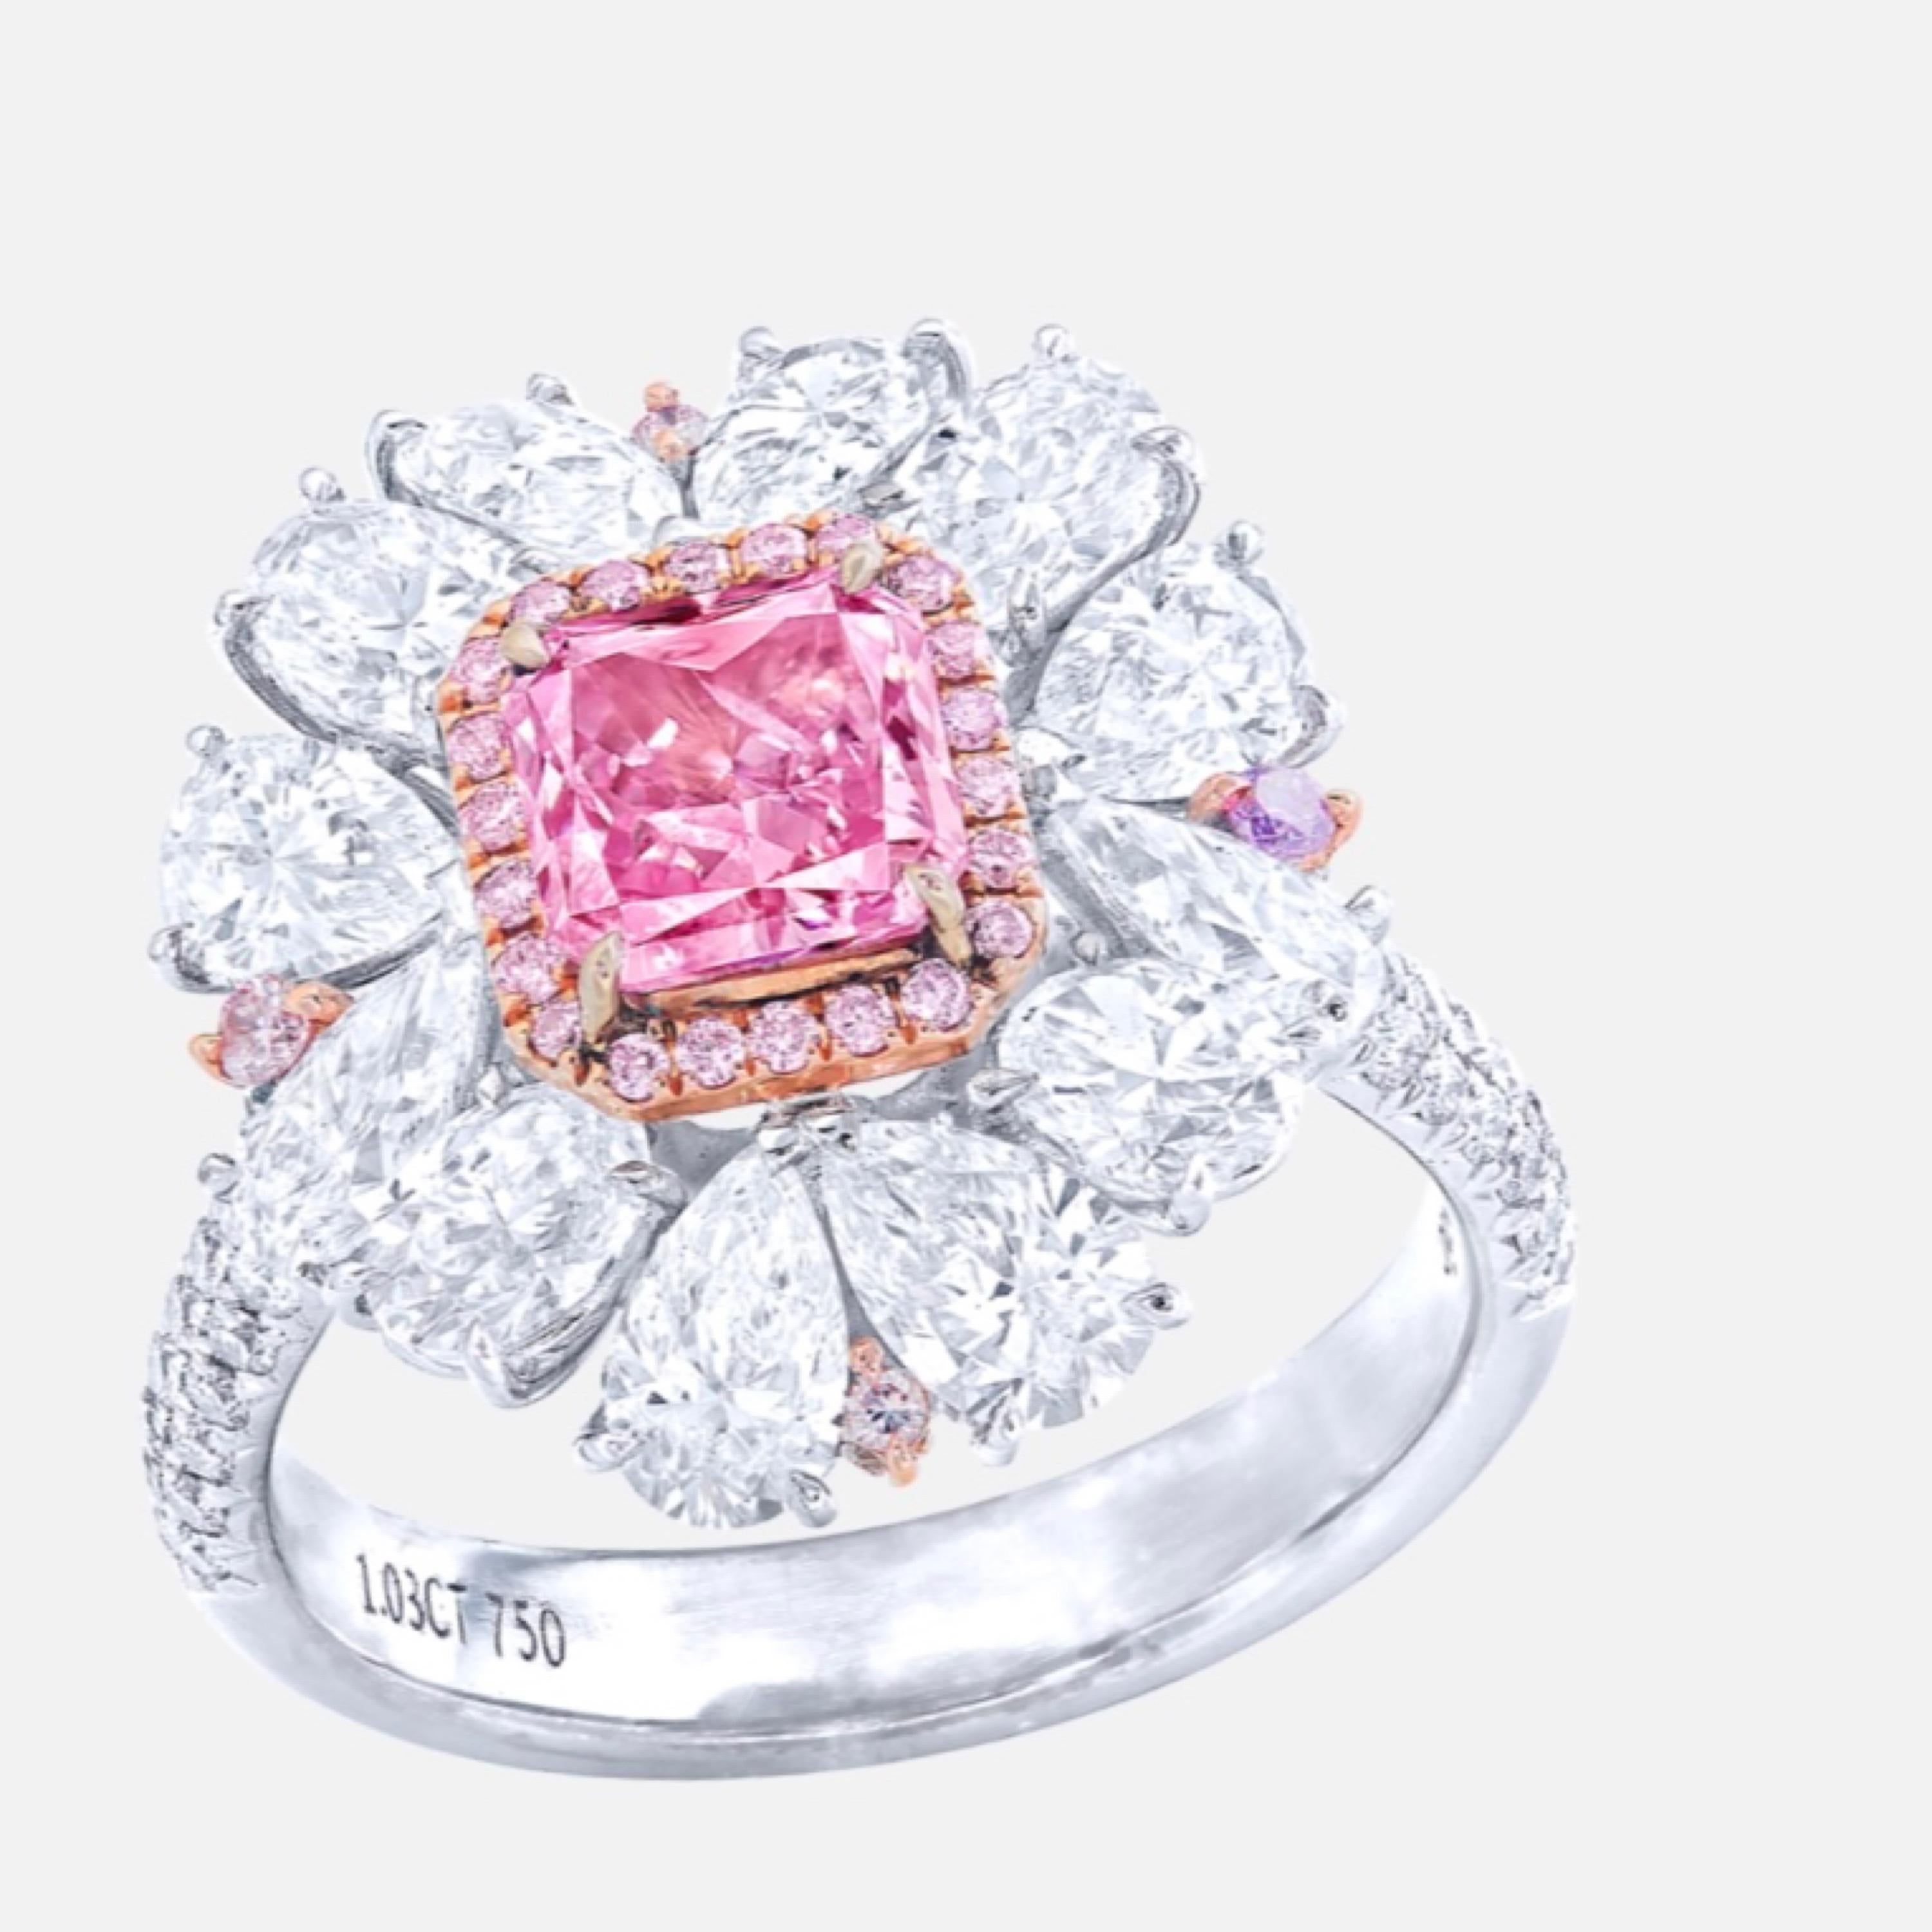 Aus dem Museumstresor von Emilio Jewelry in der berühmten New Yorker Fifth Avenue:
Mit einem prächtigen natürlichen Gia-zertifizierten Fancy Intense Purplish Pink Diamanten in der Mitte mit einem Gewicht von knapp über 1 Karat. Dieser sehr seltene